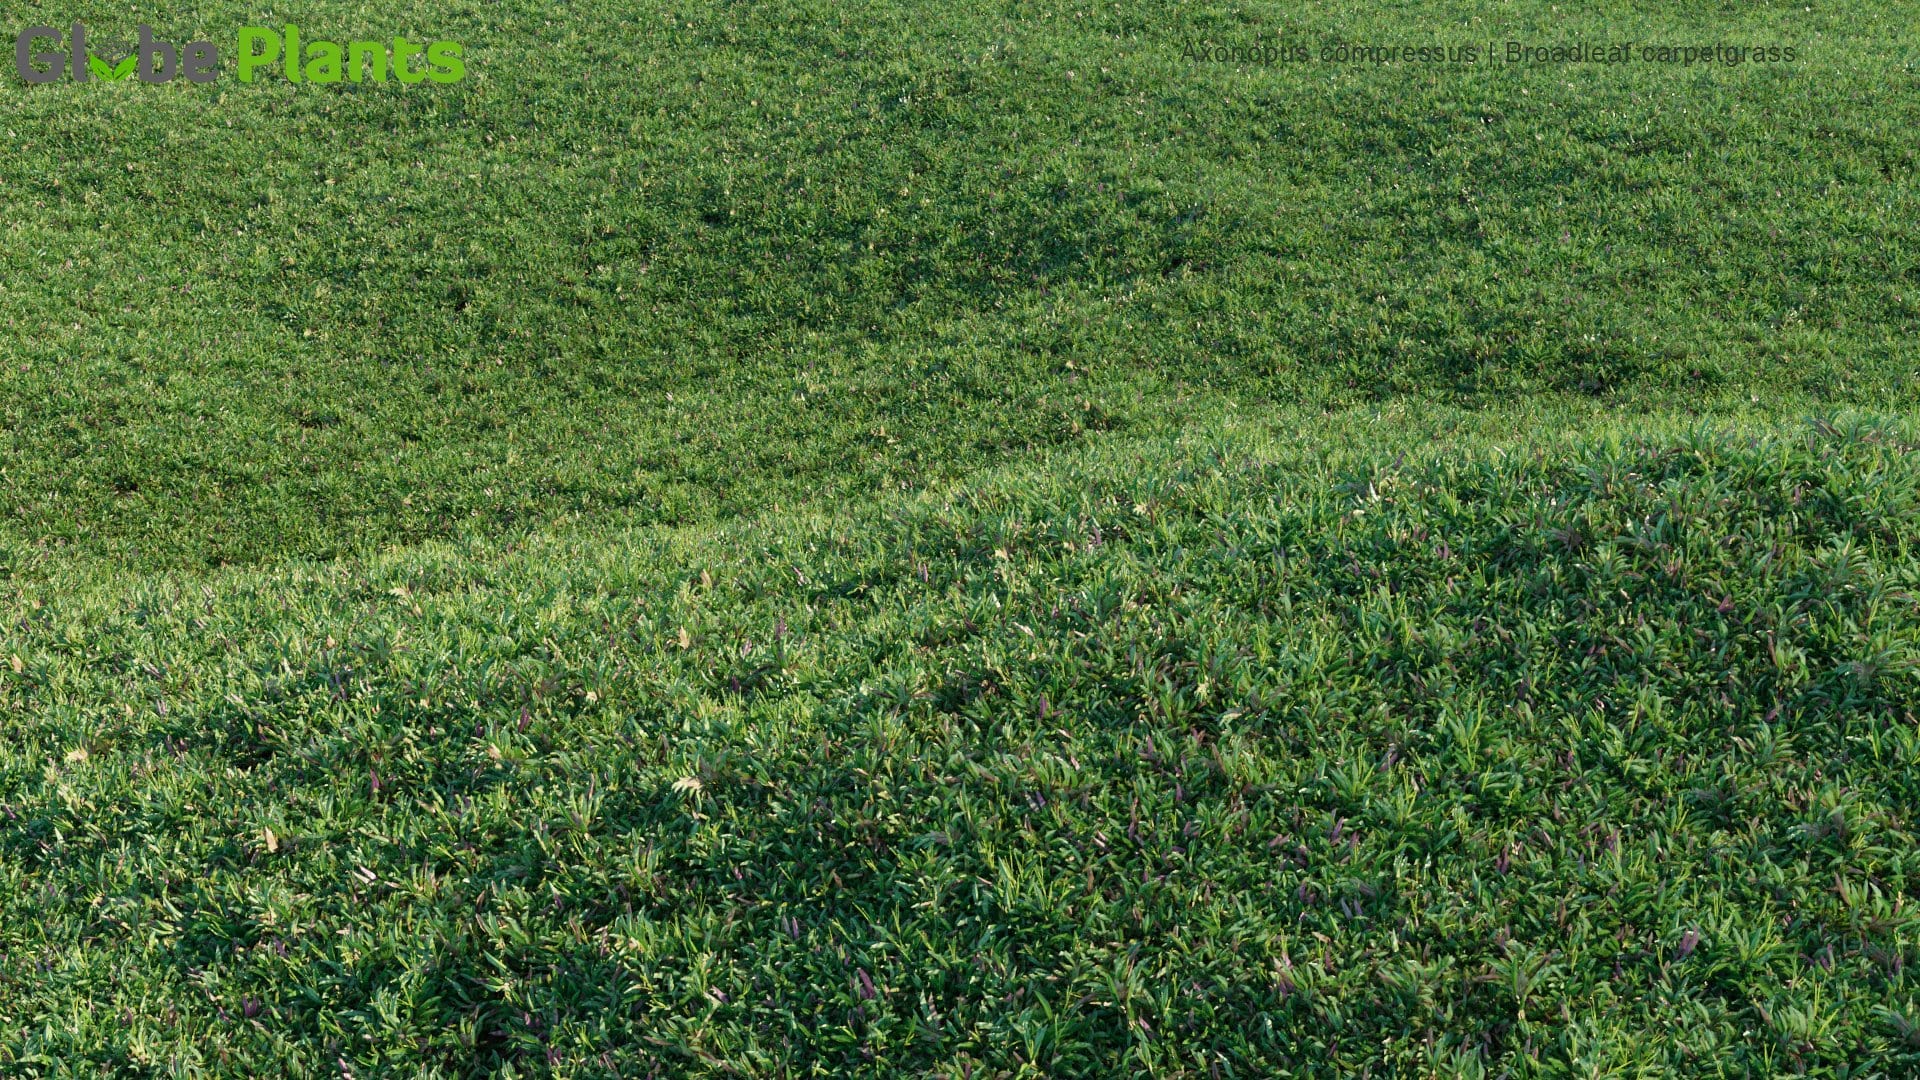 Axonopus Compressus - Broadleaf Carpetgrass , Carpet-Grass, Tropical Carpet Grass, Blanket Grass, Lawn Grass, Louisiana Grass, Savanna Grass, Kearsney Grass (3D Model)